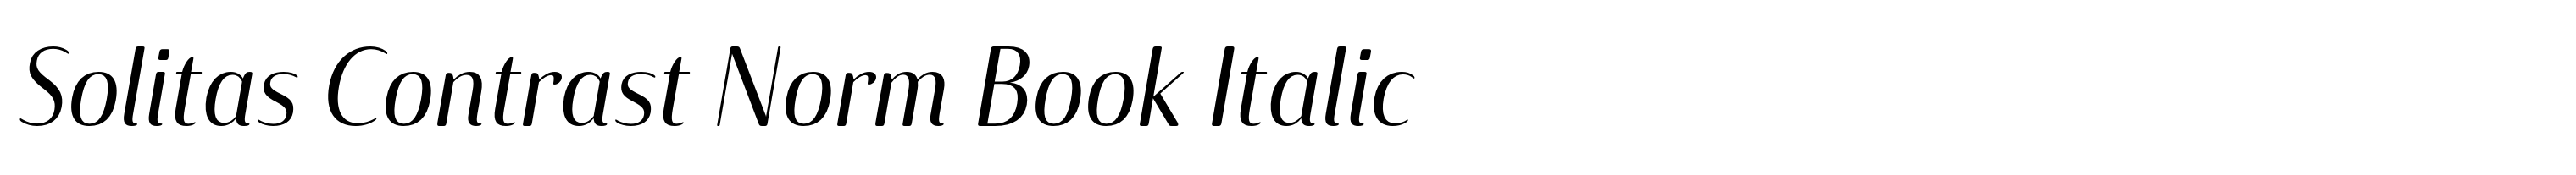 Solitas Contrast Norm Book Italic